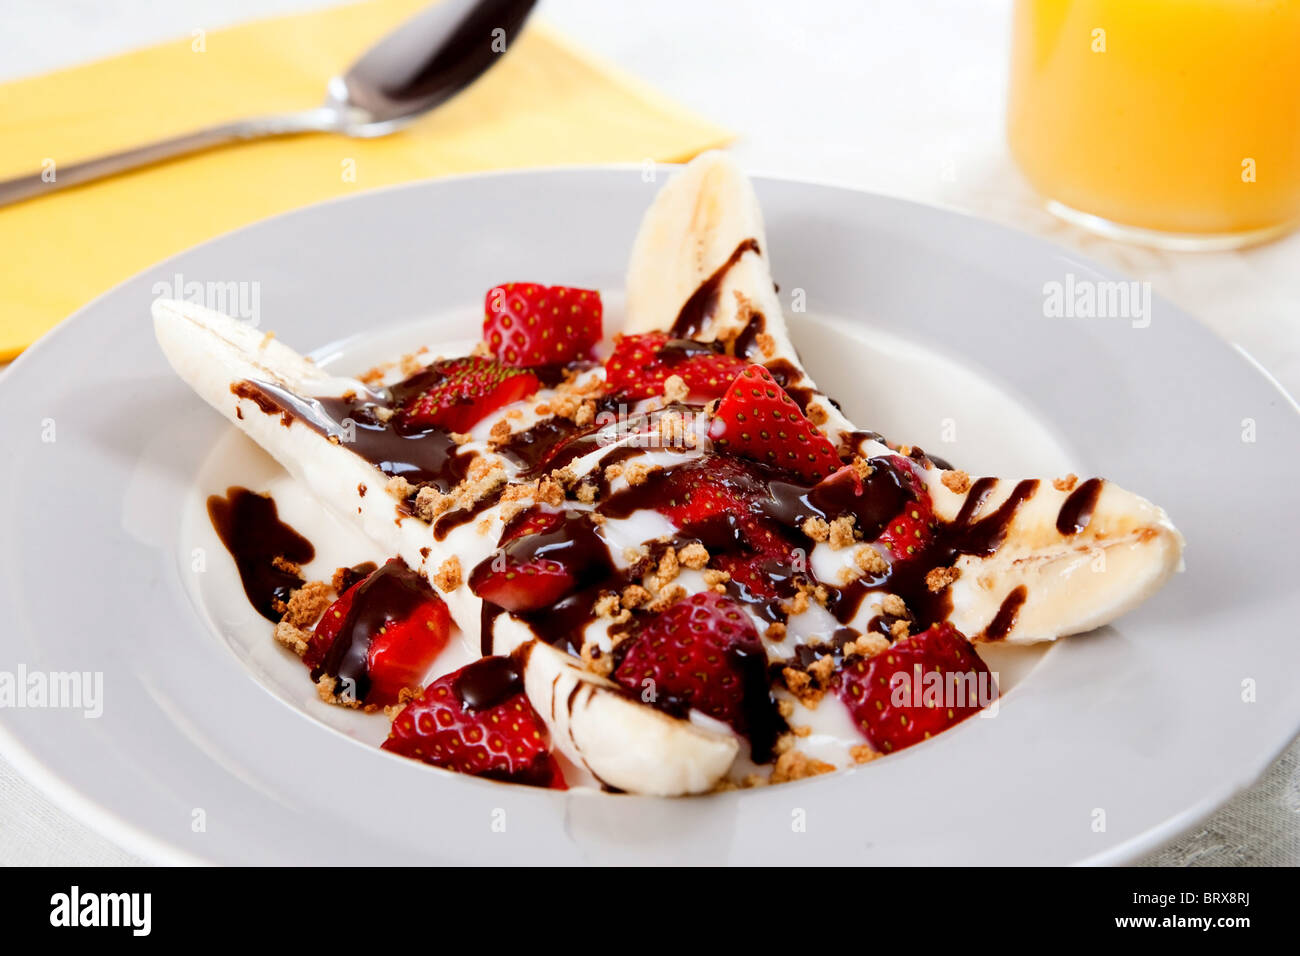 Une assiette santé de banana split avec du yogourt faible en gras, les fraises et sucre ajouté Banque D'Images